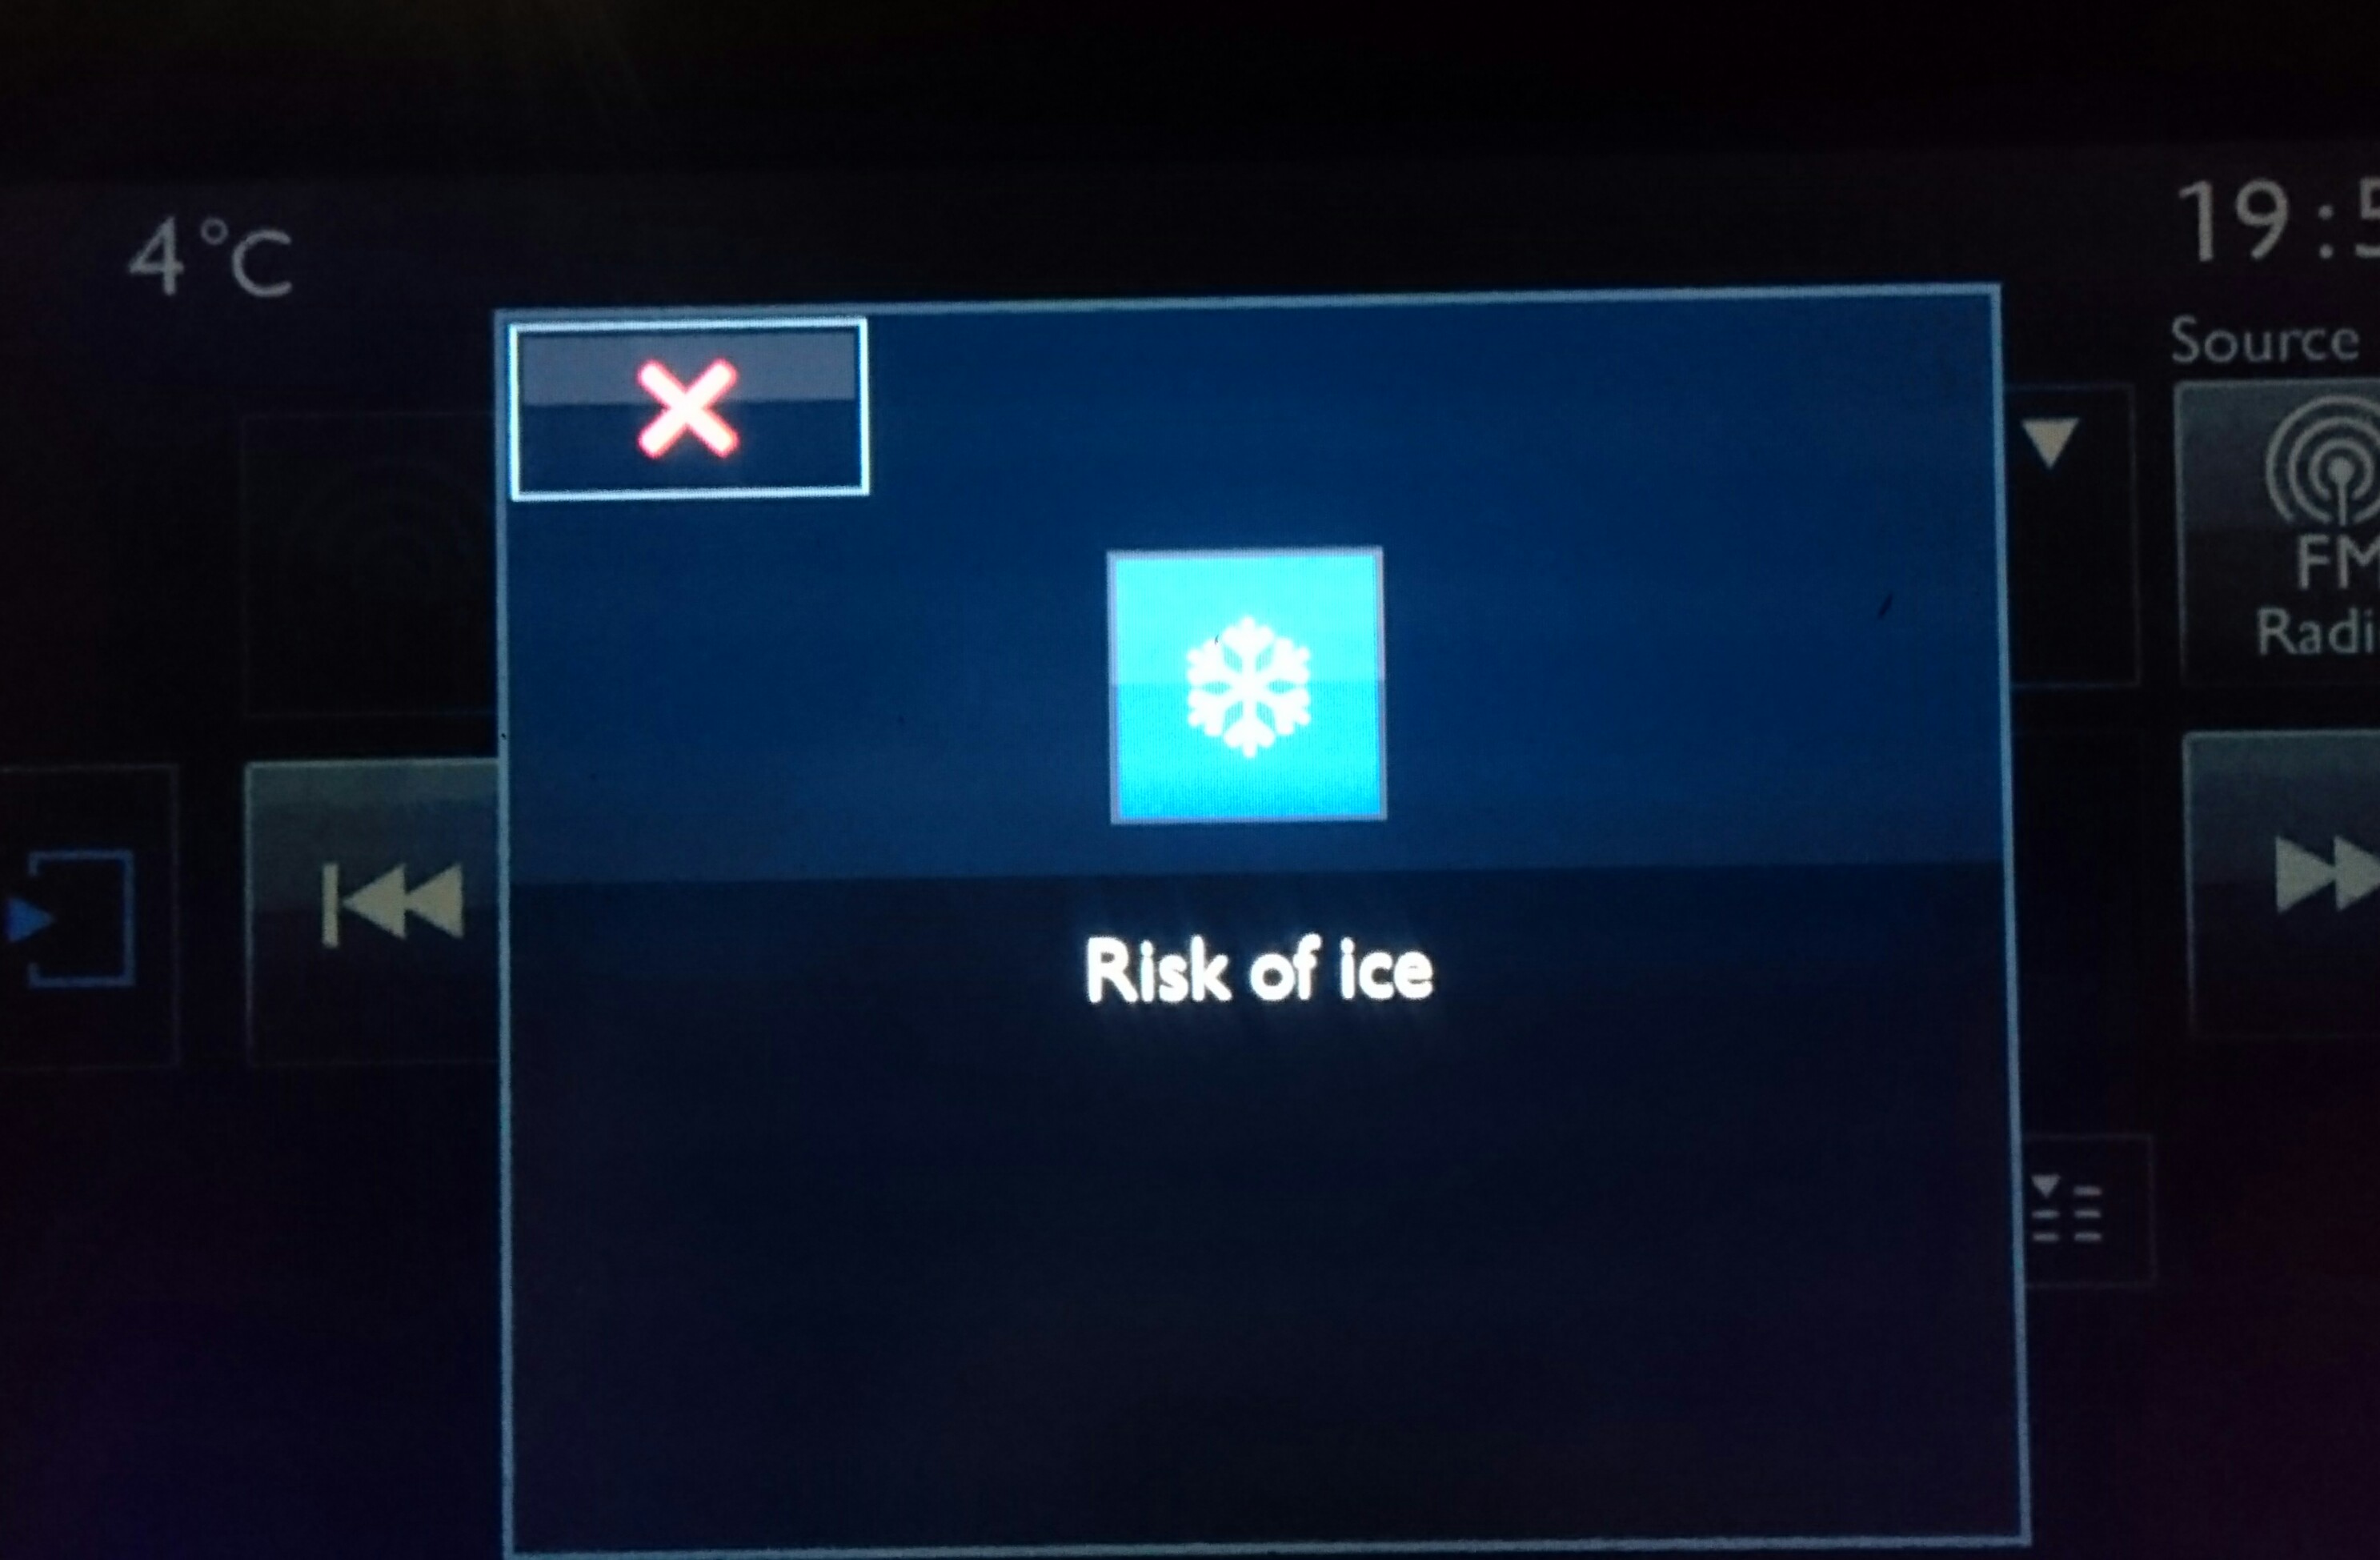 九州大分とて『Risk of ice』のシーズン到来です。